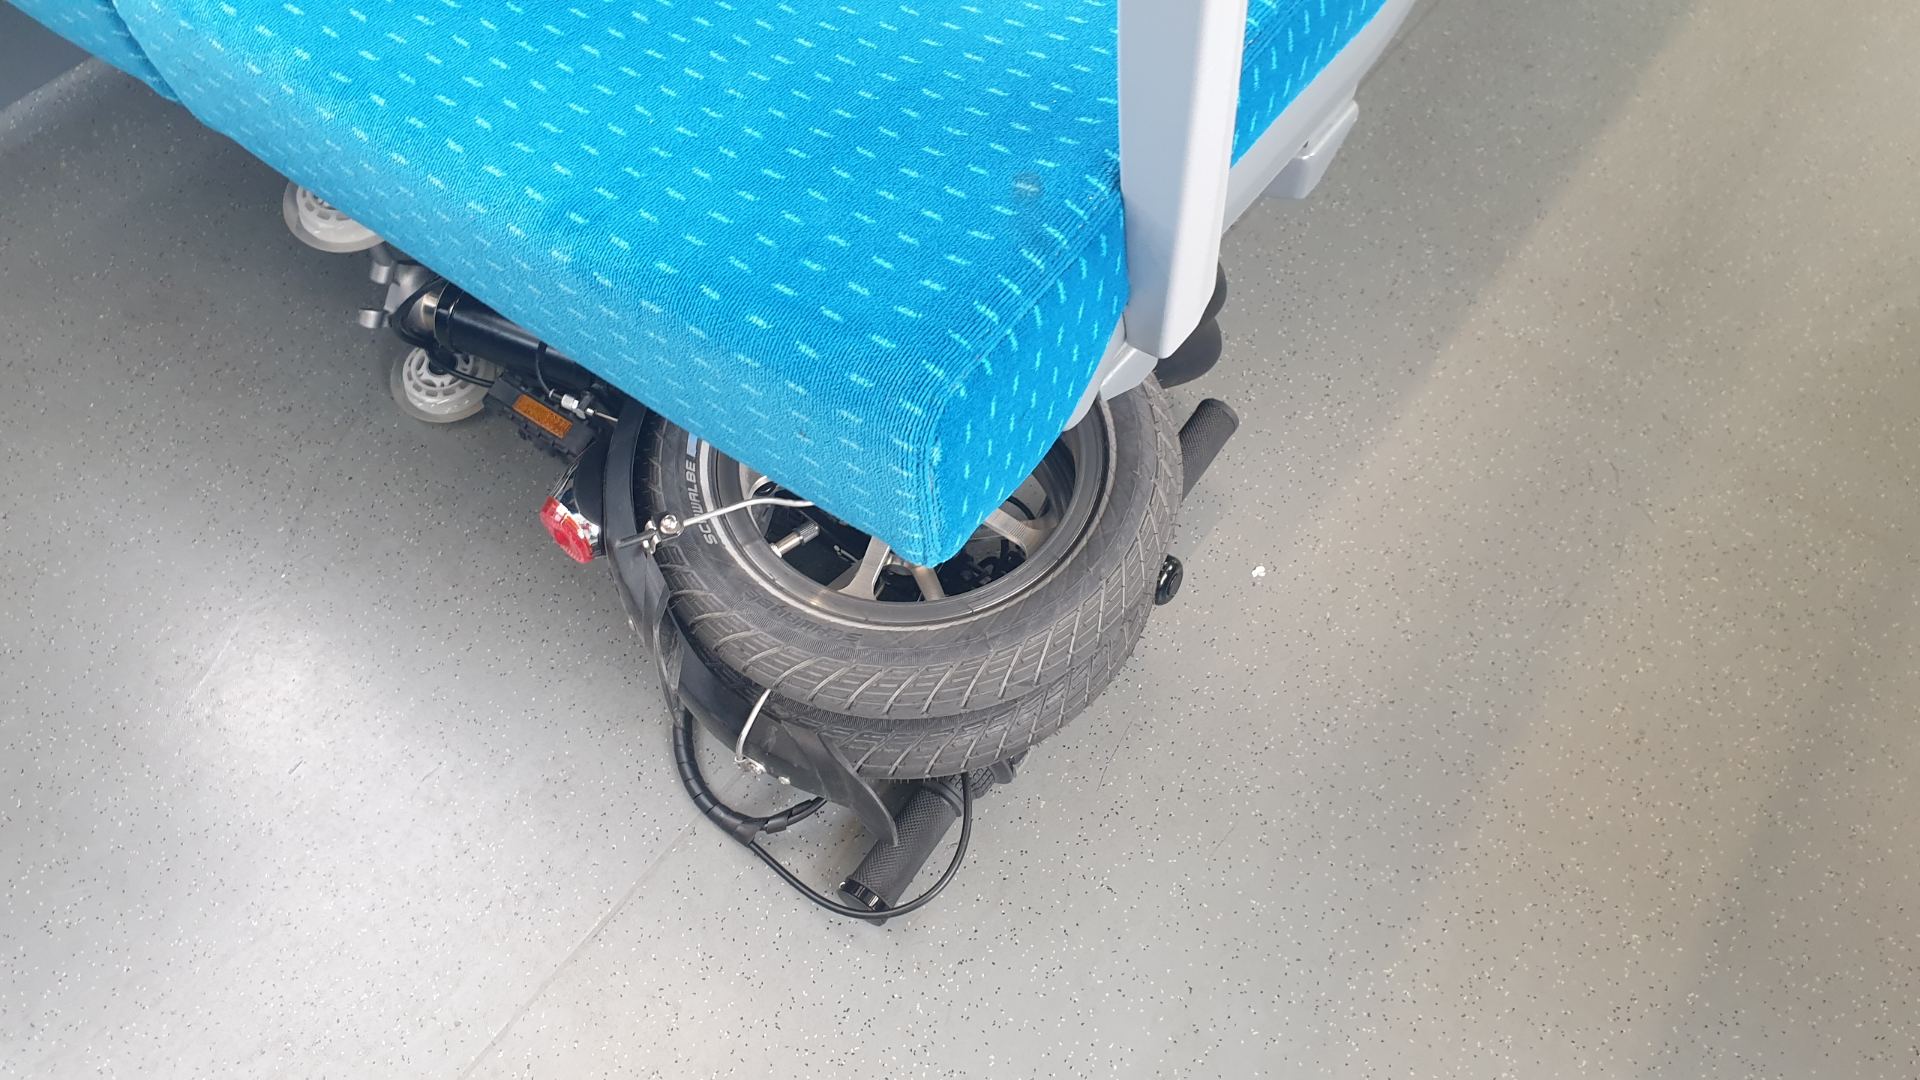 Bicicleta-plegable-movimiento-bajo-el-asiento-del-tren